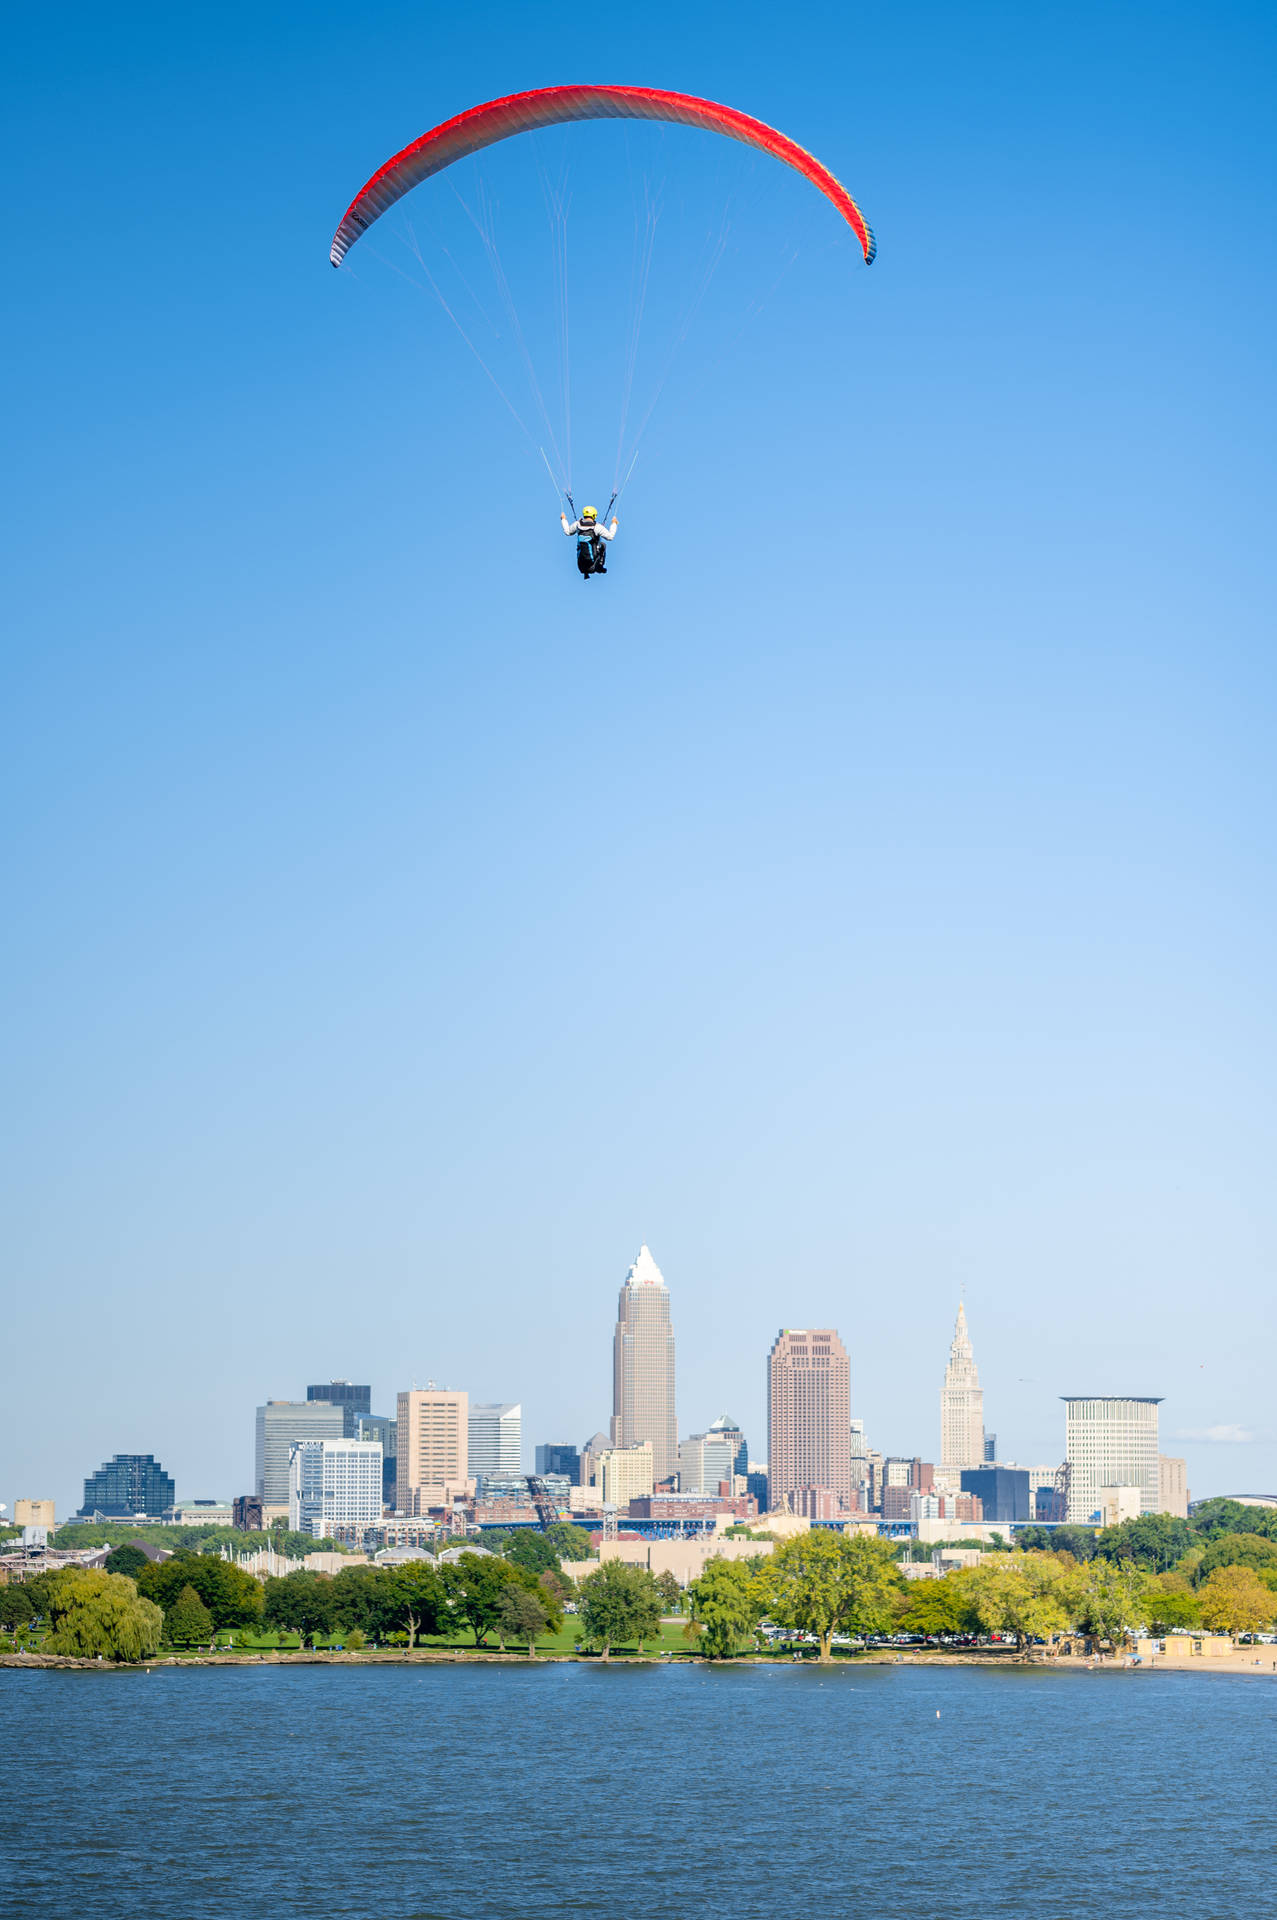 Opdag Cleveland skyline mens du paraglider! Wallpaper